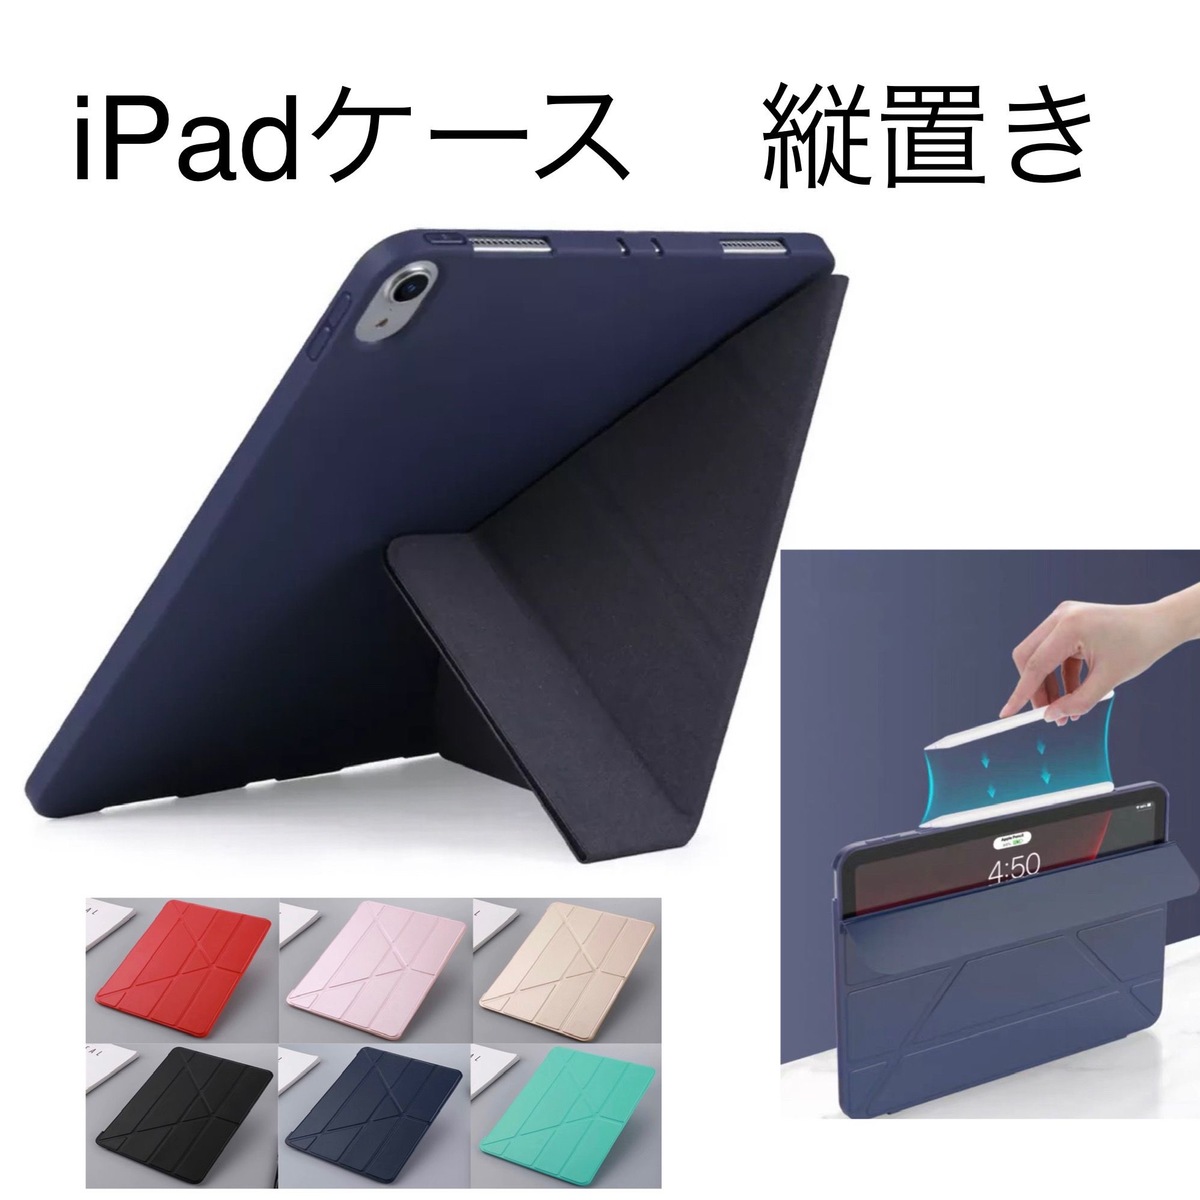 iPadケース 変形 お得な強化ガラスフィルムセット 縦置き 縦 立つ iPadカバー 2020年 Air4 10.9 mini6 2018 2020 Pro11 アイパッド タブ